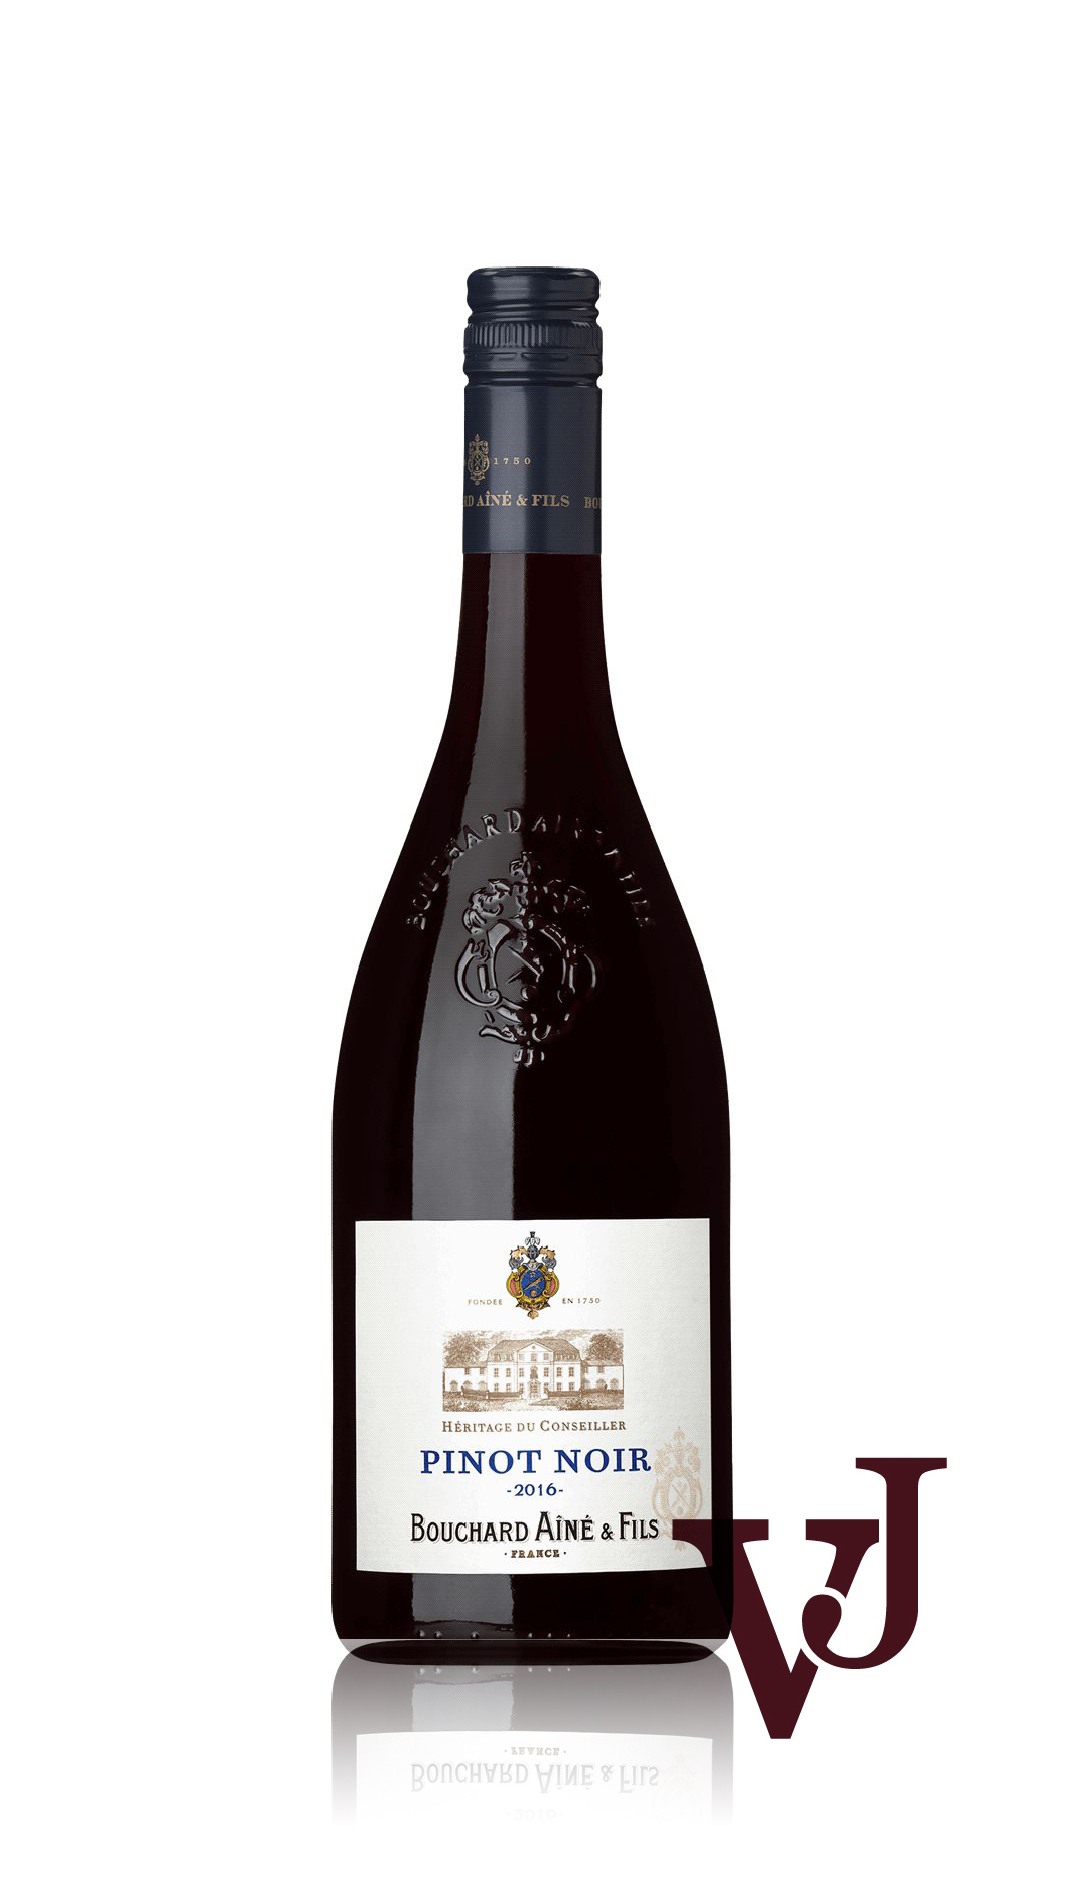 Rött Vin - Bouchard Aîné Pinot Noir artikel nummer 8253101 från producenten Bouchard Aîné et Fils från området Frankrike